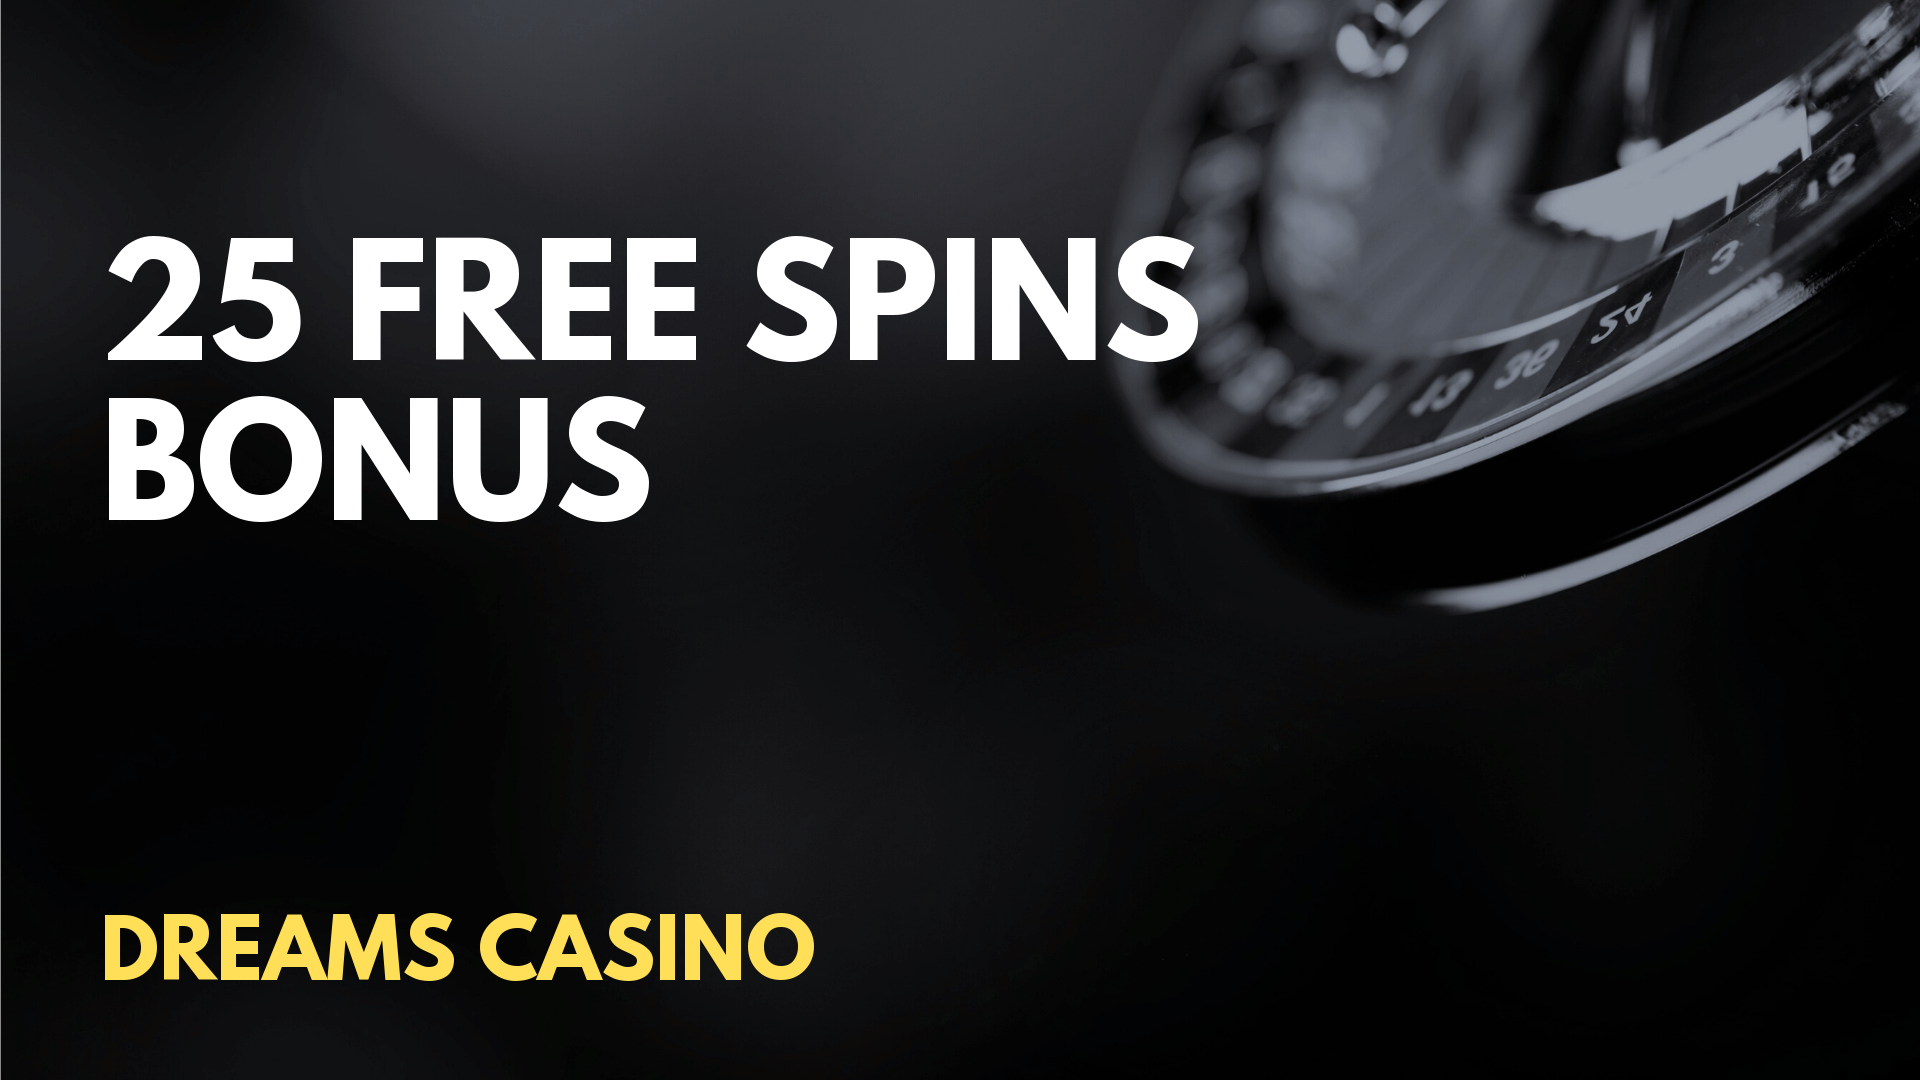 lucky dreams casino no deposit bonus codes